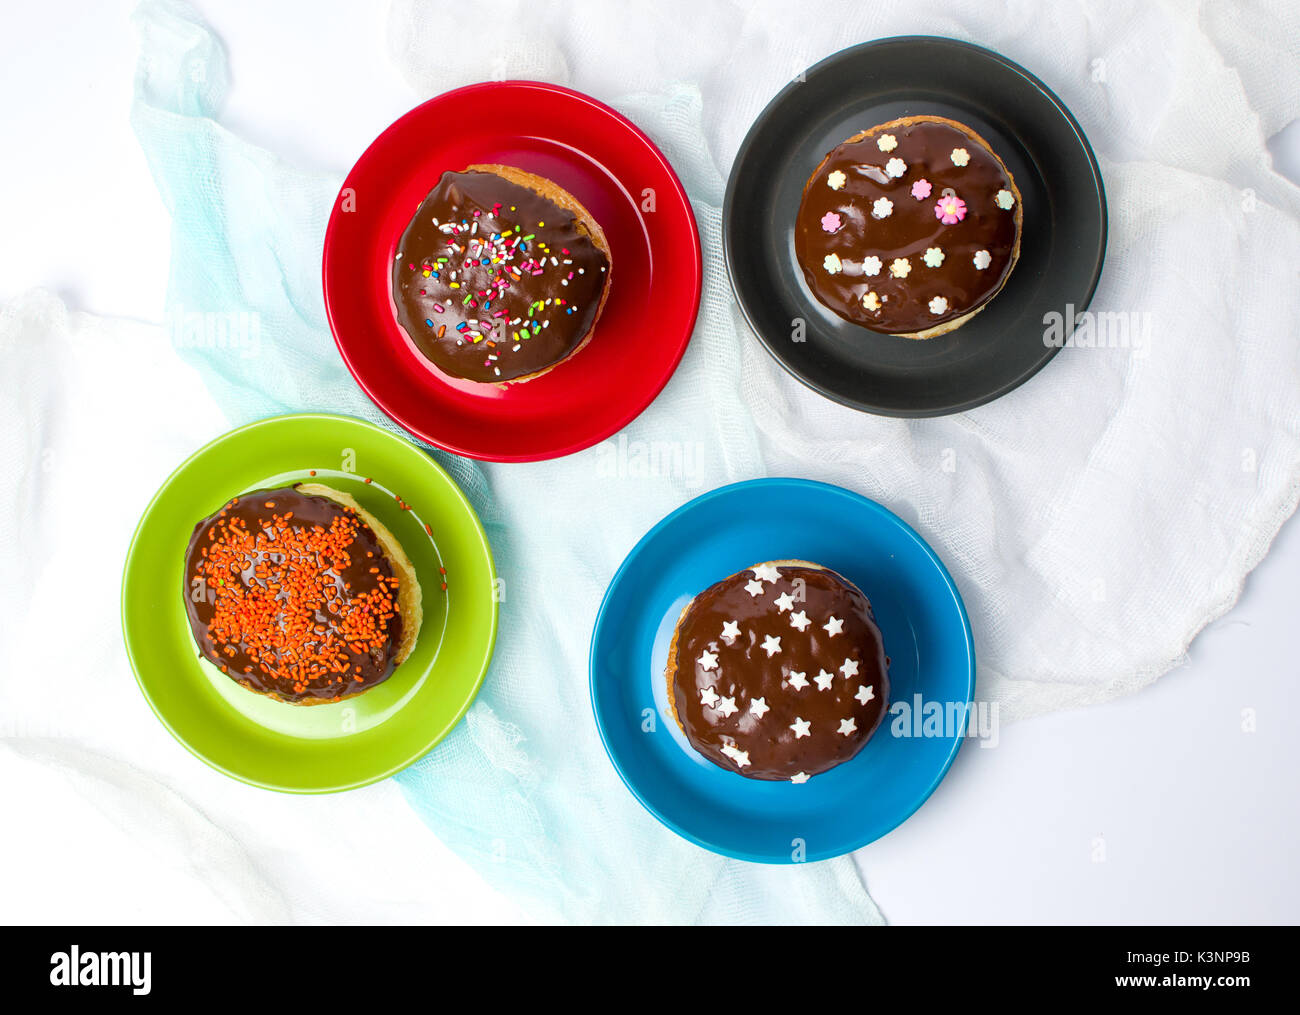 Dekoriert Donuts auf der bunten Platten Draufsicht Stockfoto